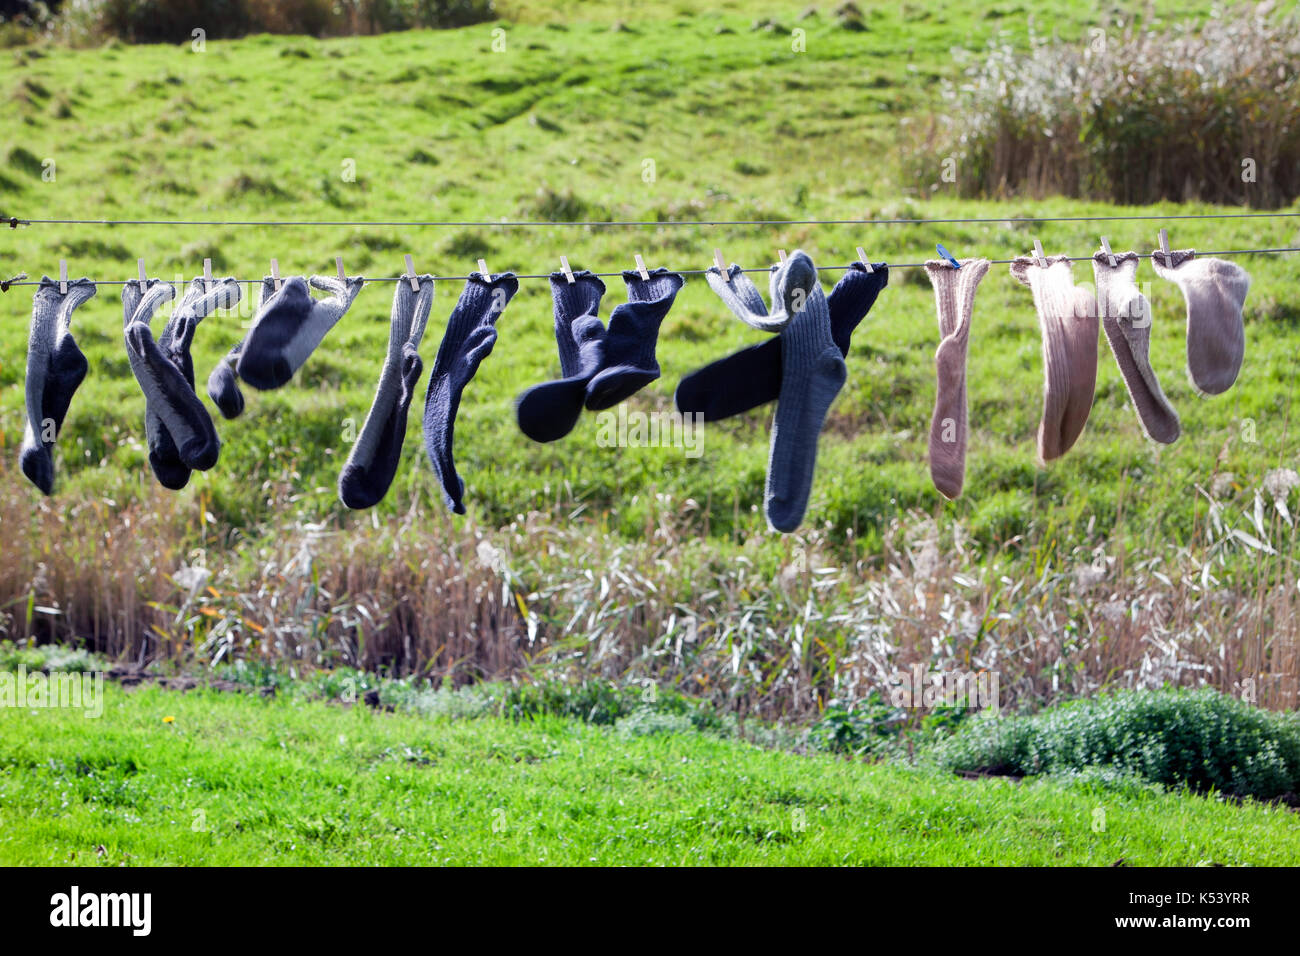 Rural scene of socks drying in the wind Stock Photo